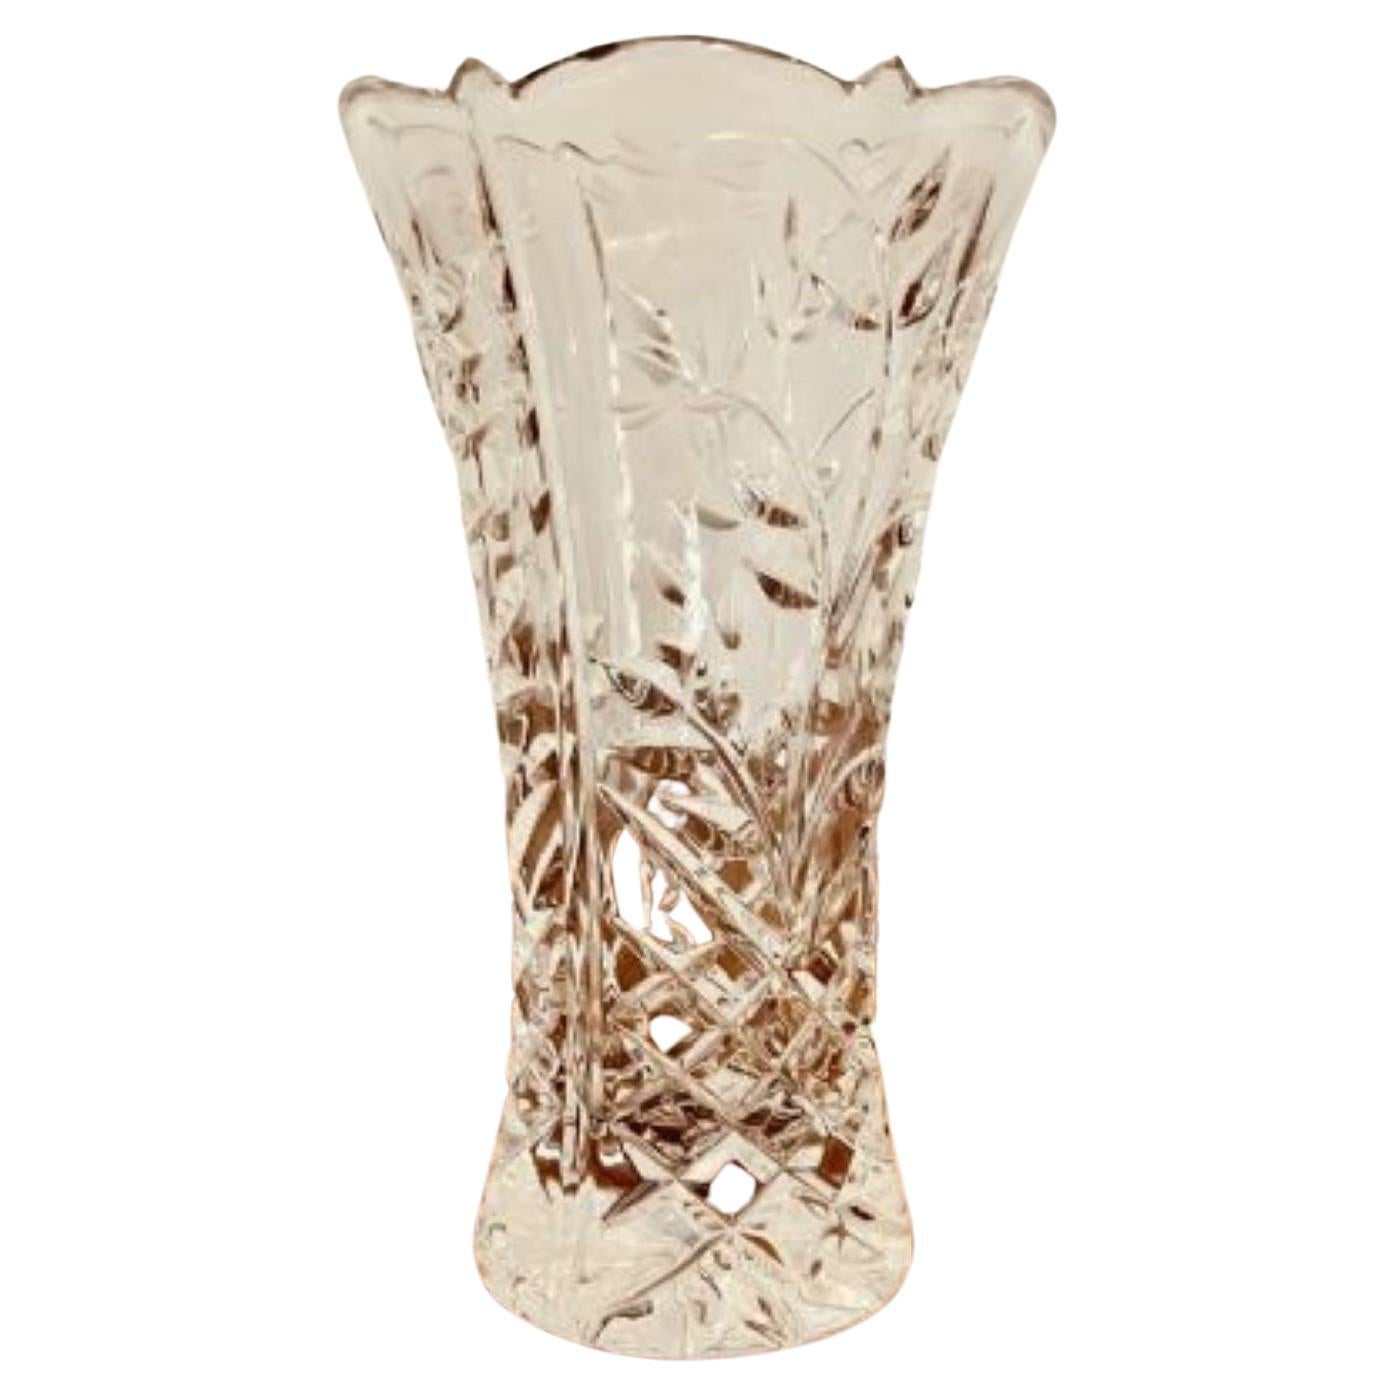 Antique Edwardian cut glass vase